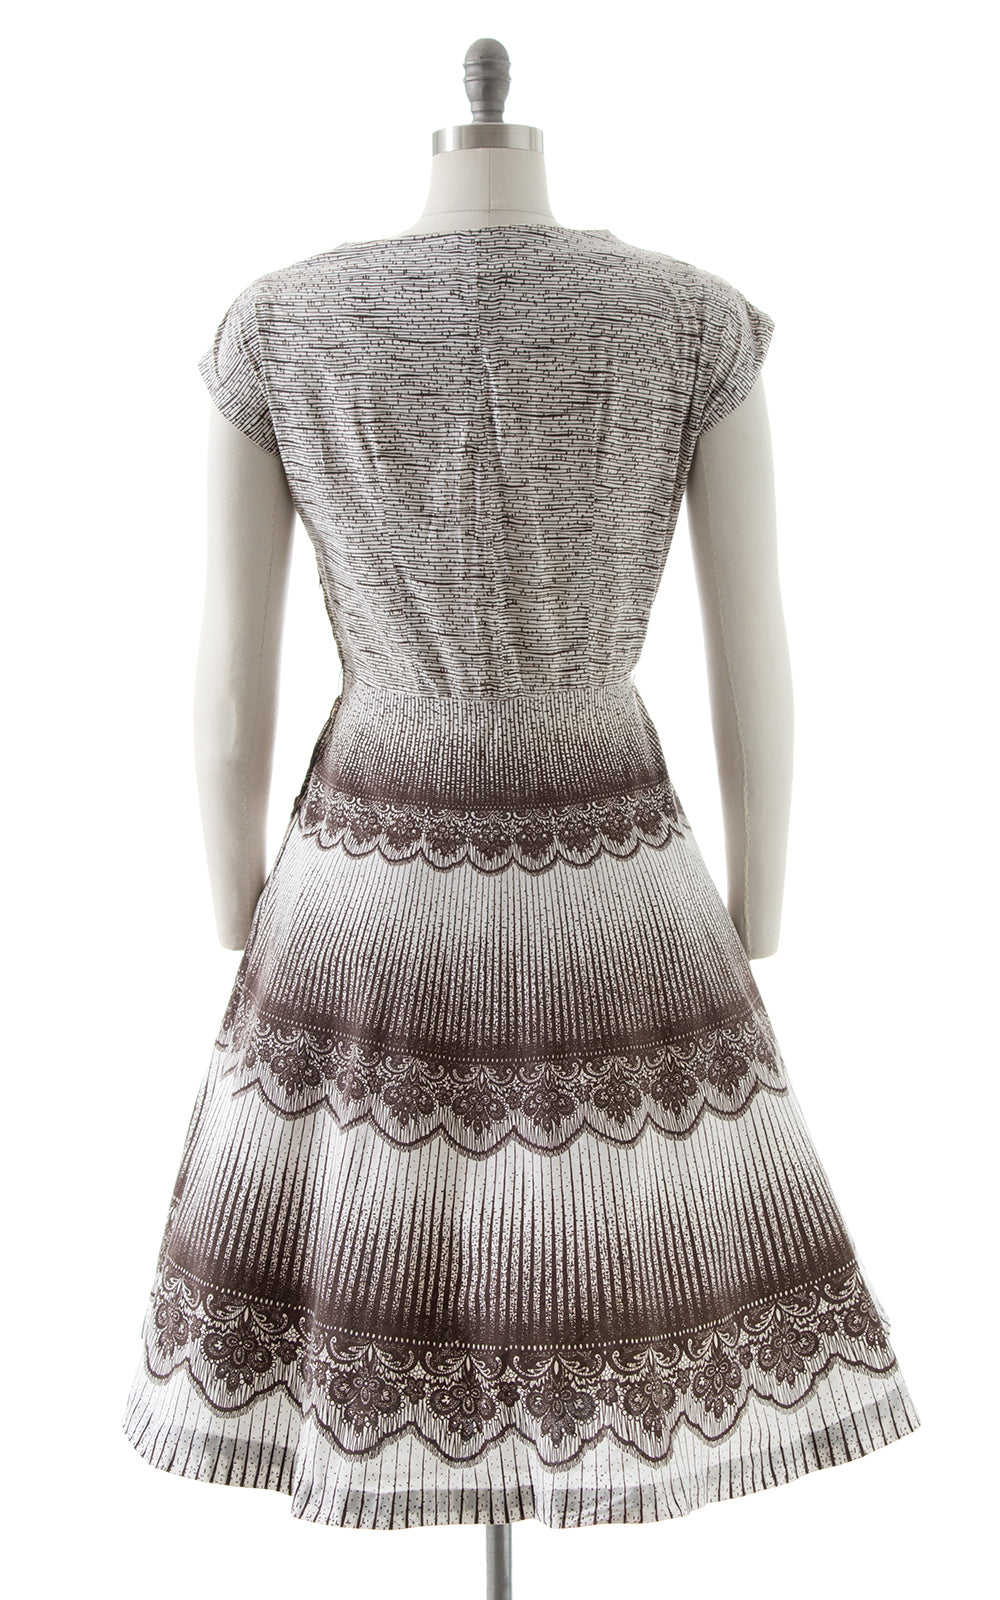 1950s Lace Trompe L'oeil Dress